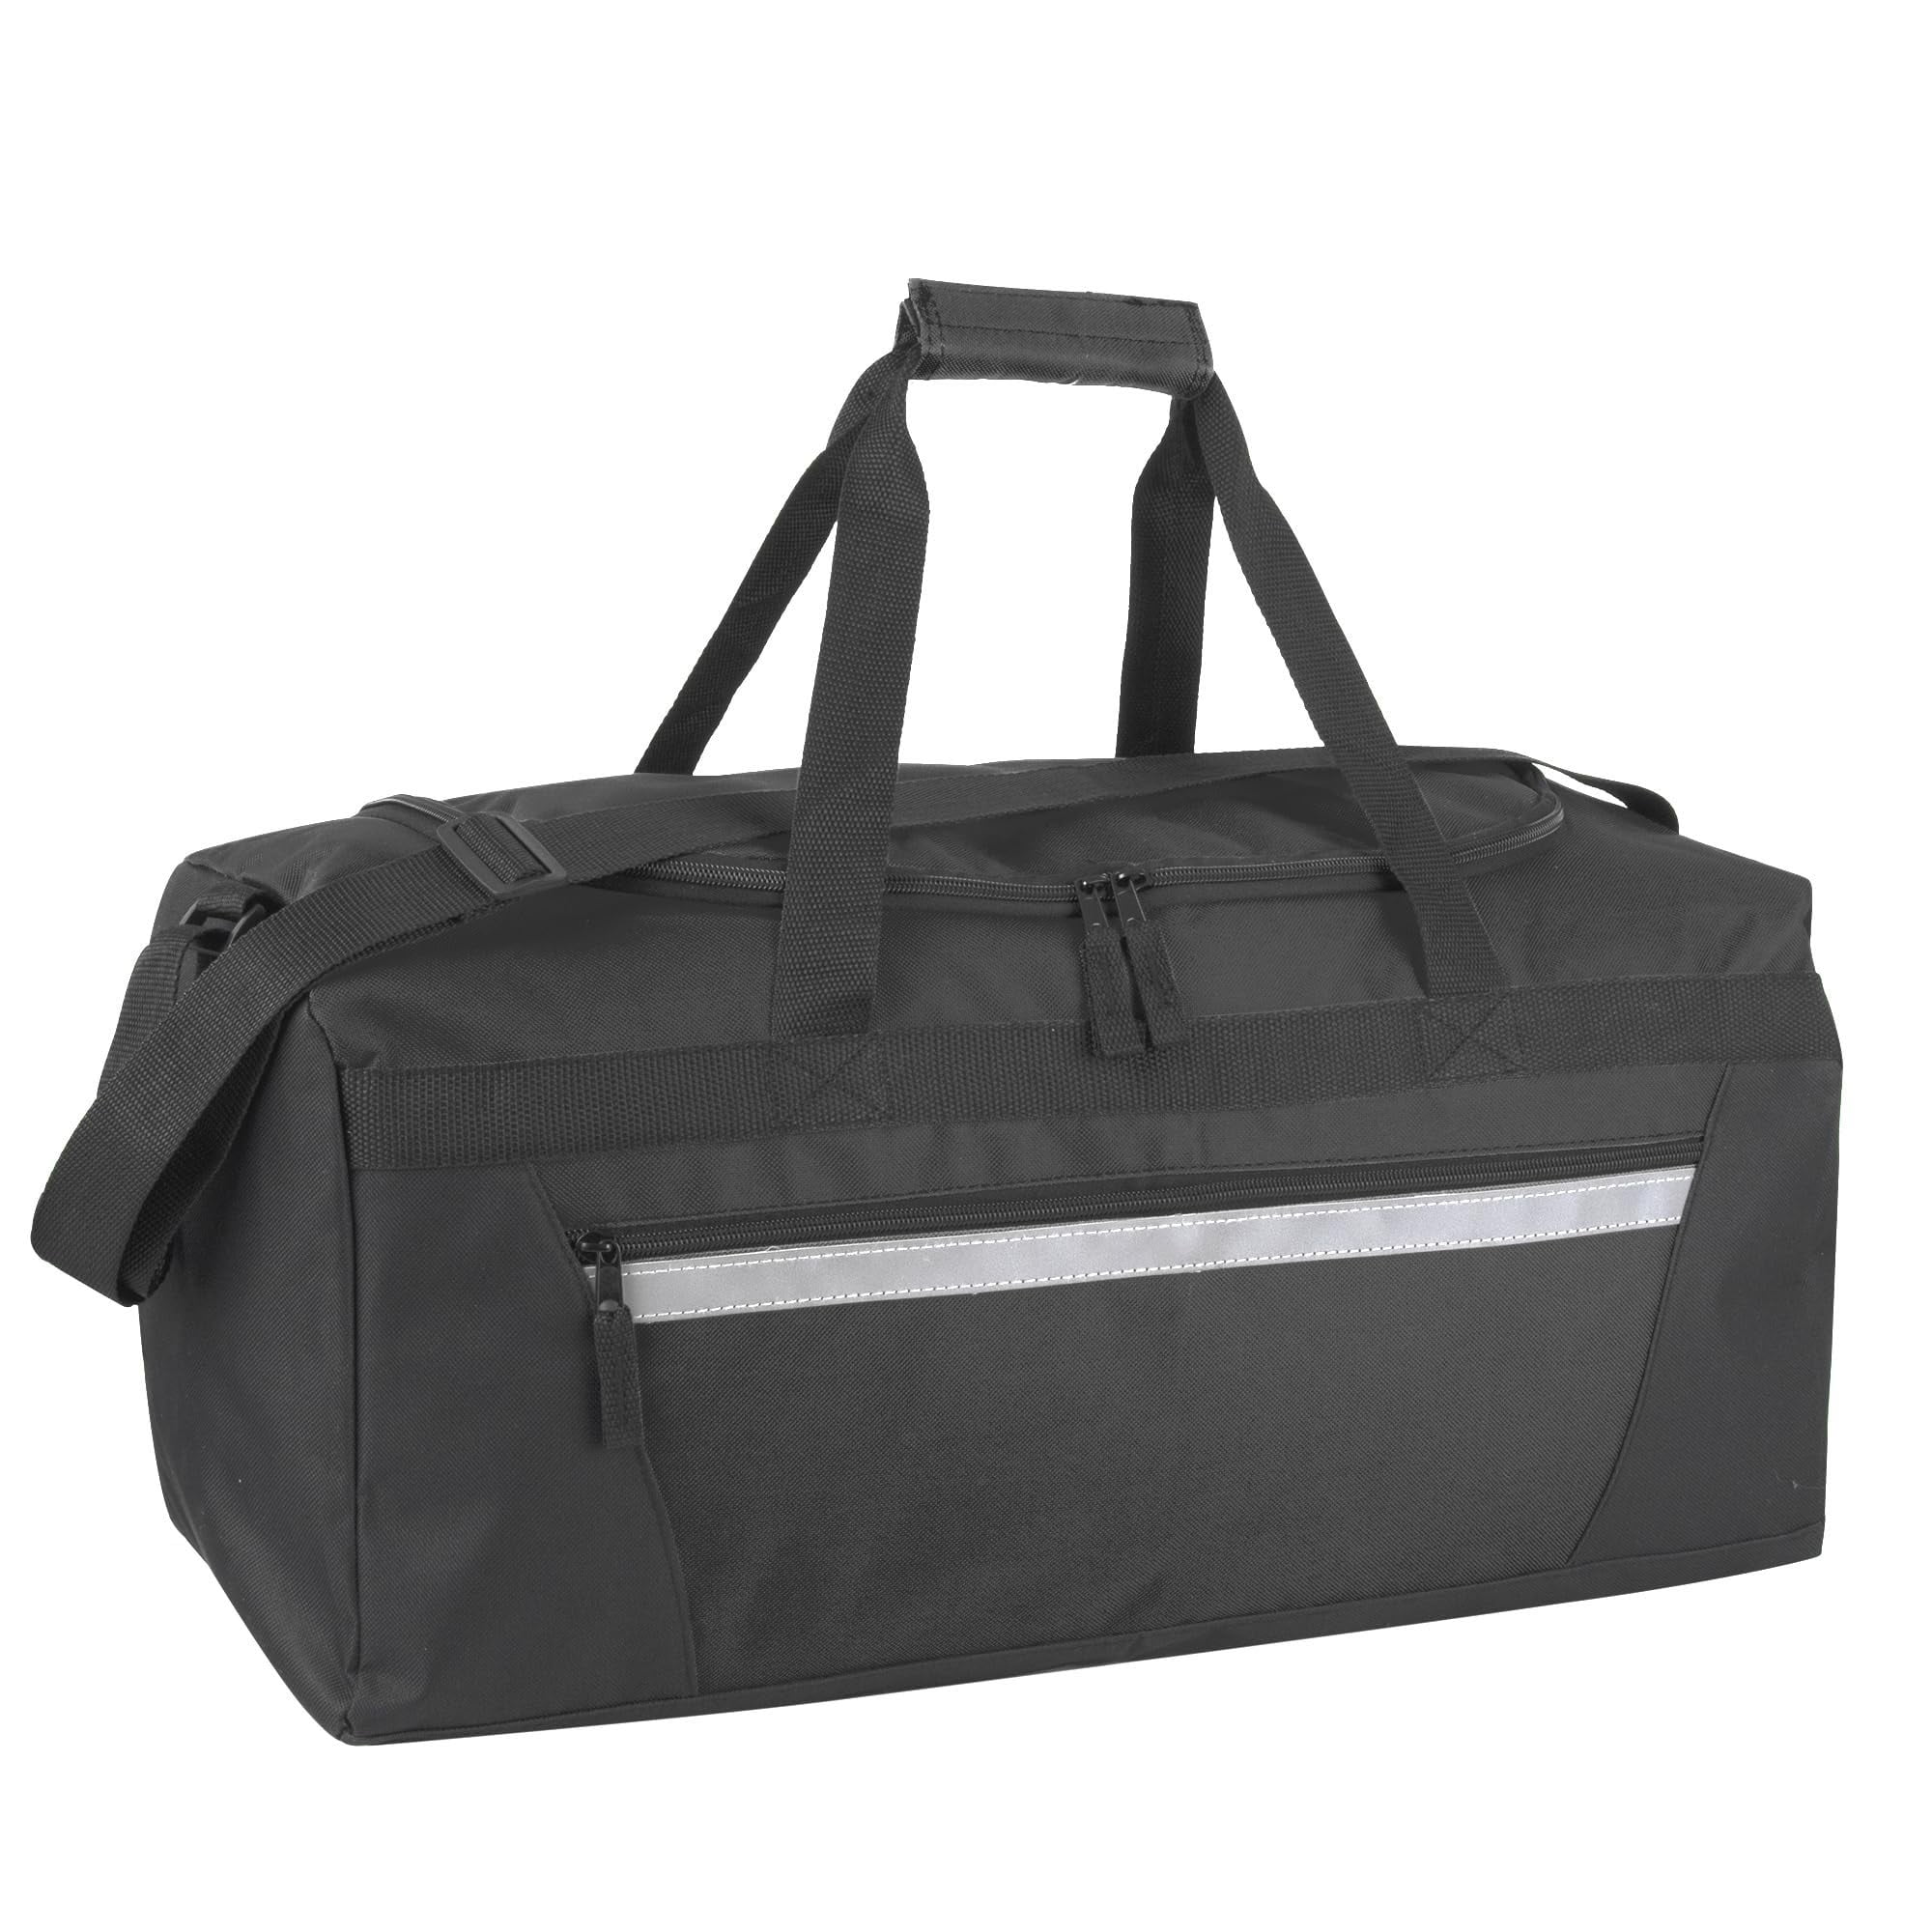 Black & Decker Duffle Bag Shoulder Bag Backpack Large Tool Bag Tote Carry  40